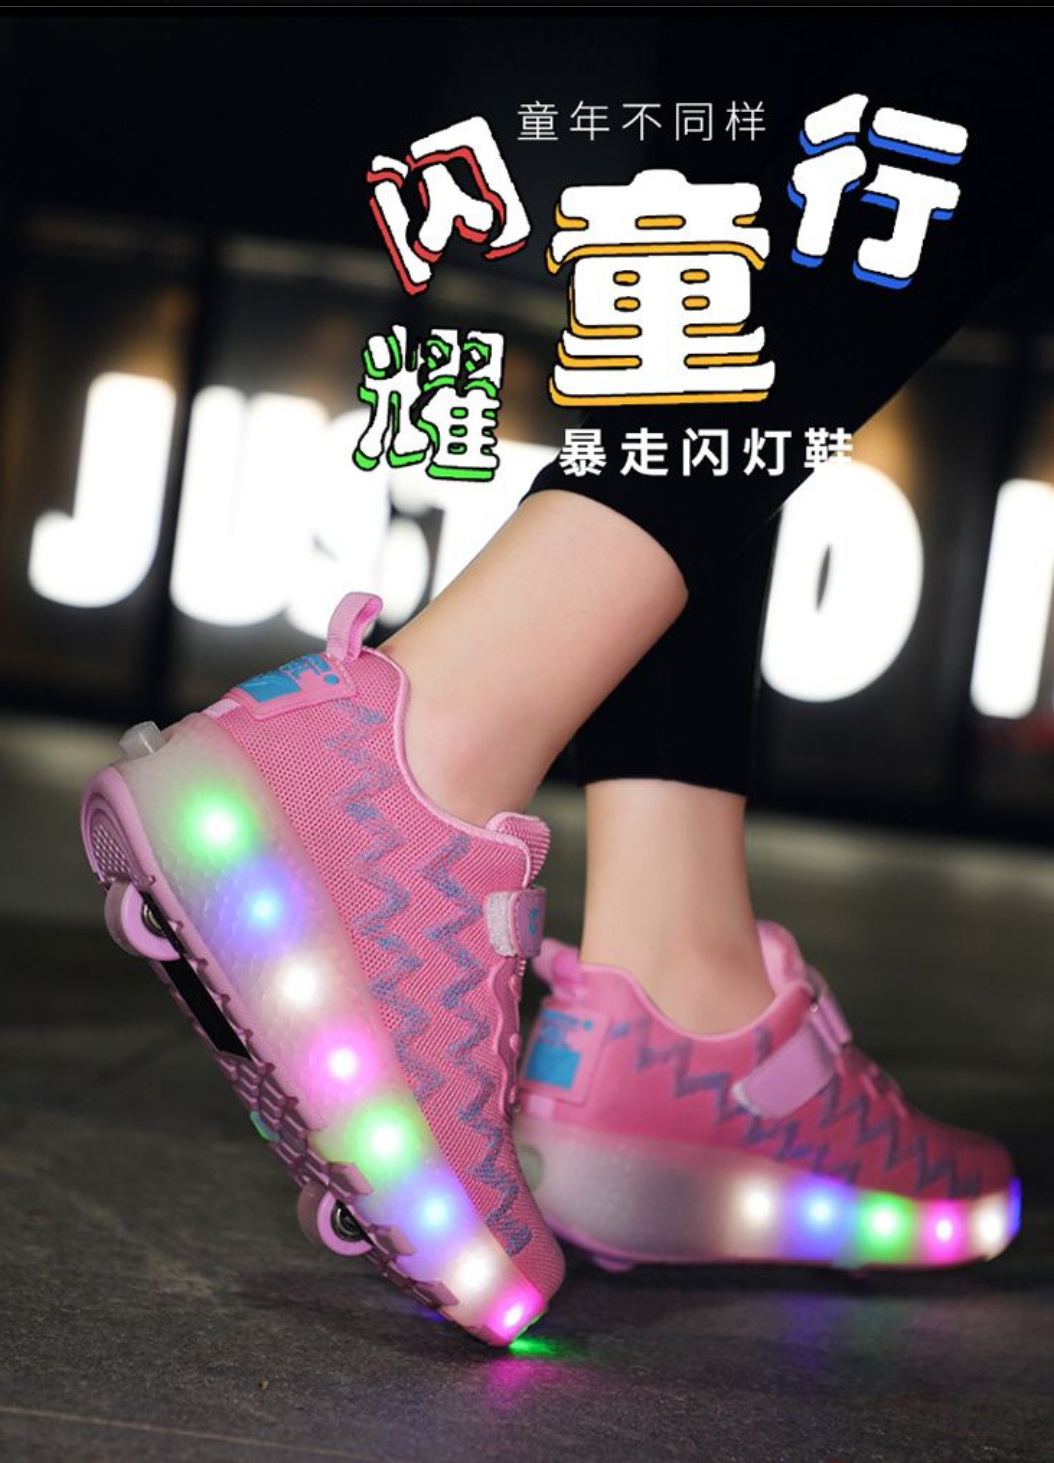 รองเท้าเก็บล้อรุ่นใหม่ติดไฟ Led  แบบชาร์ตได้ มีให้เลือก 2 สี สีดำและสีชมพู  LED Charger Roller shoes  ใส่สบาย พร้อมส่ง (ร้านคนไทย)